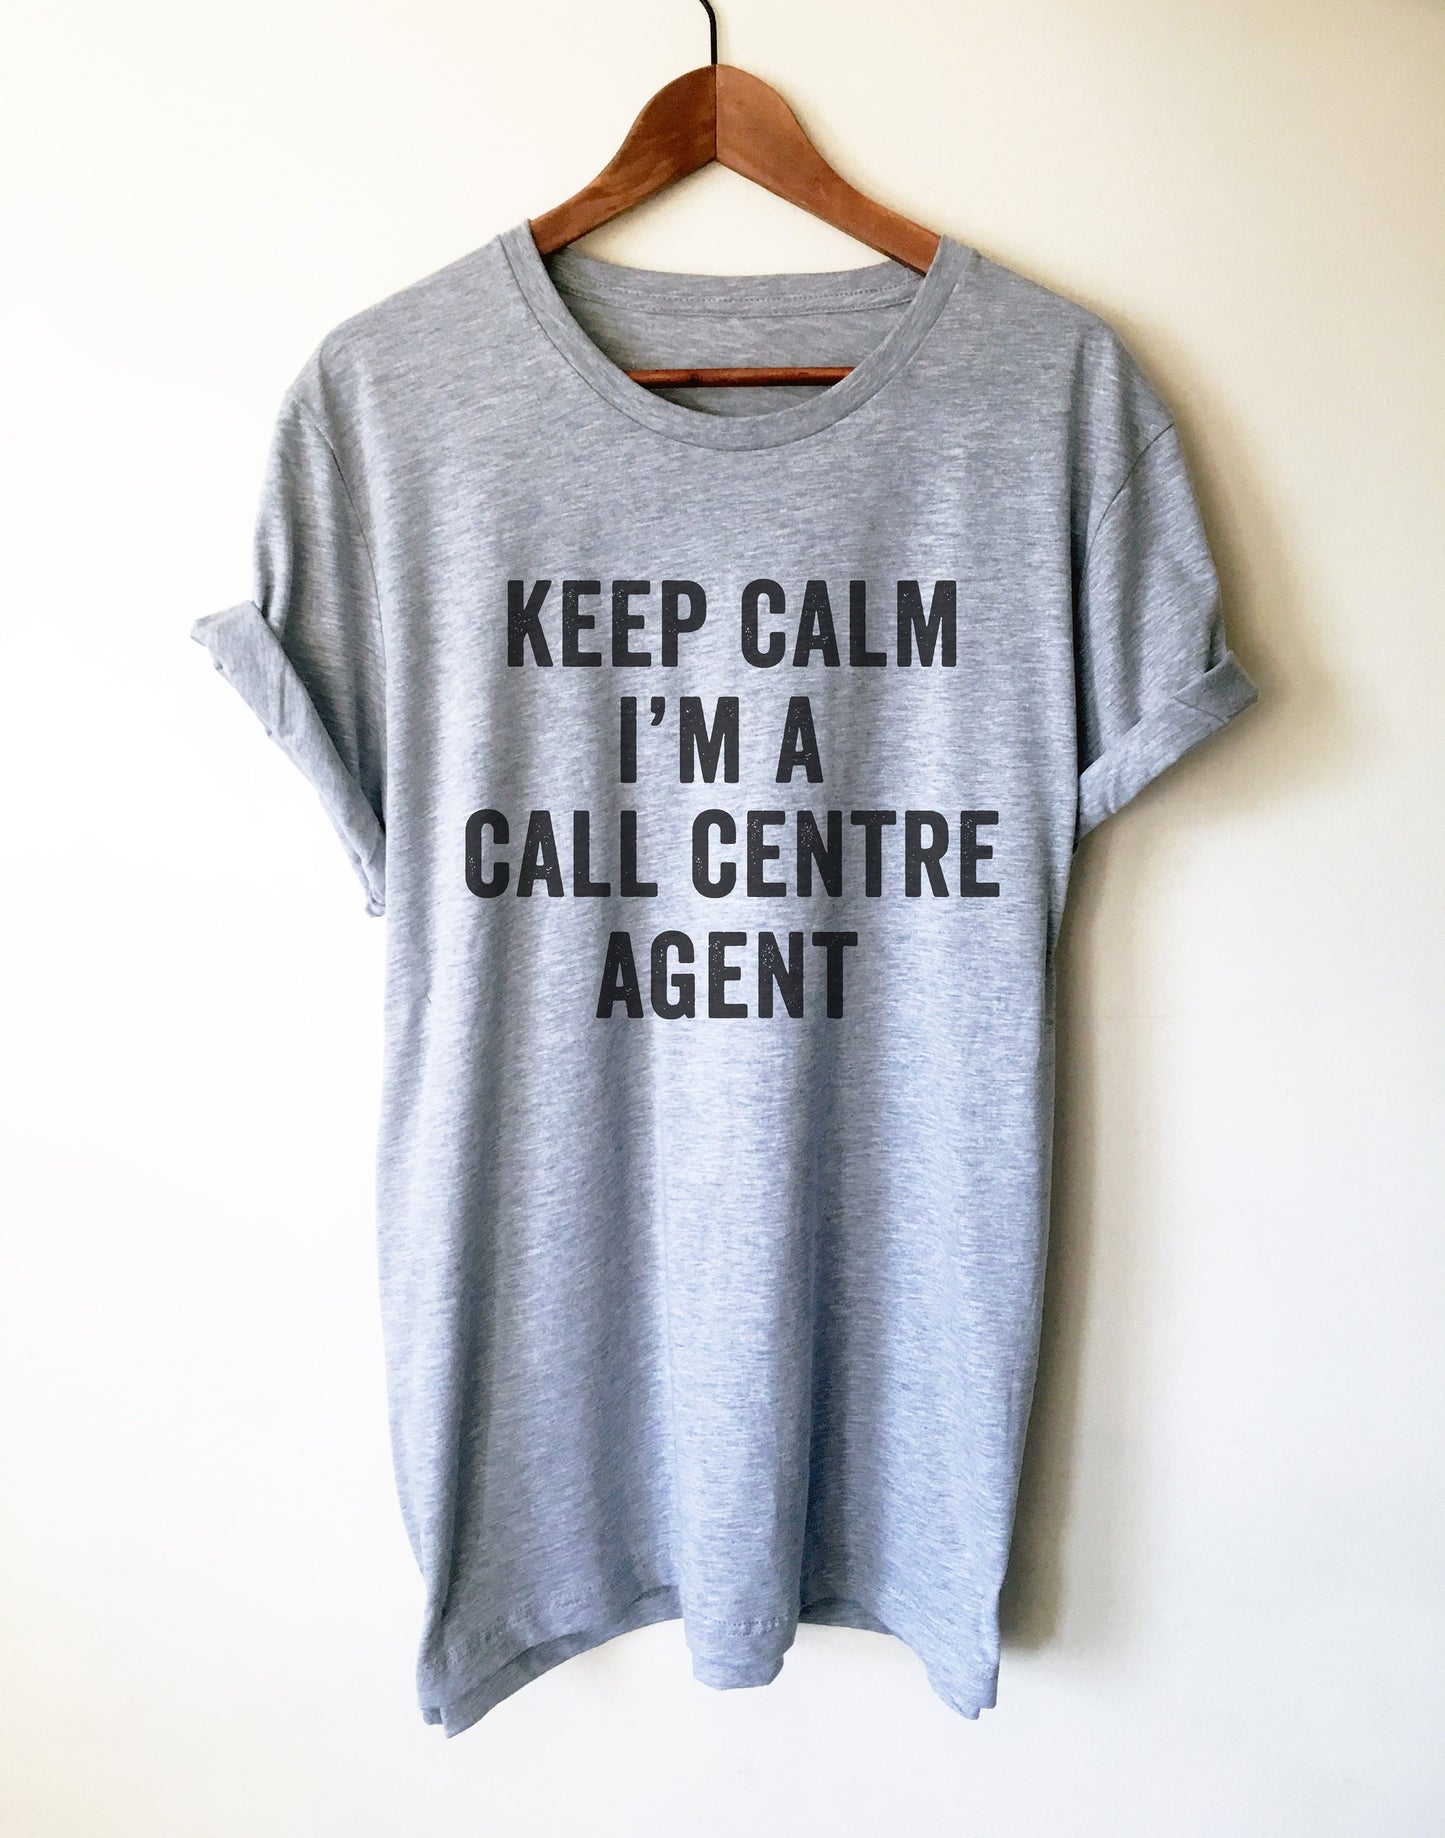 Keep Calm I'm A Call Centre Agent Unisex Shirt - Call Centre Agent Shirt, Customer Service Shirt, Gift For Coworker, Call Center Agent Shirt